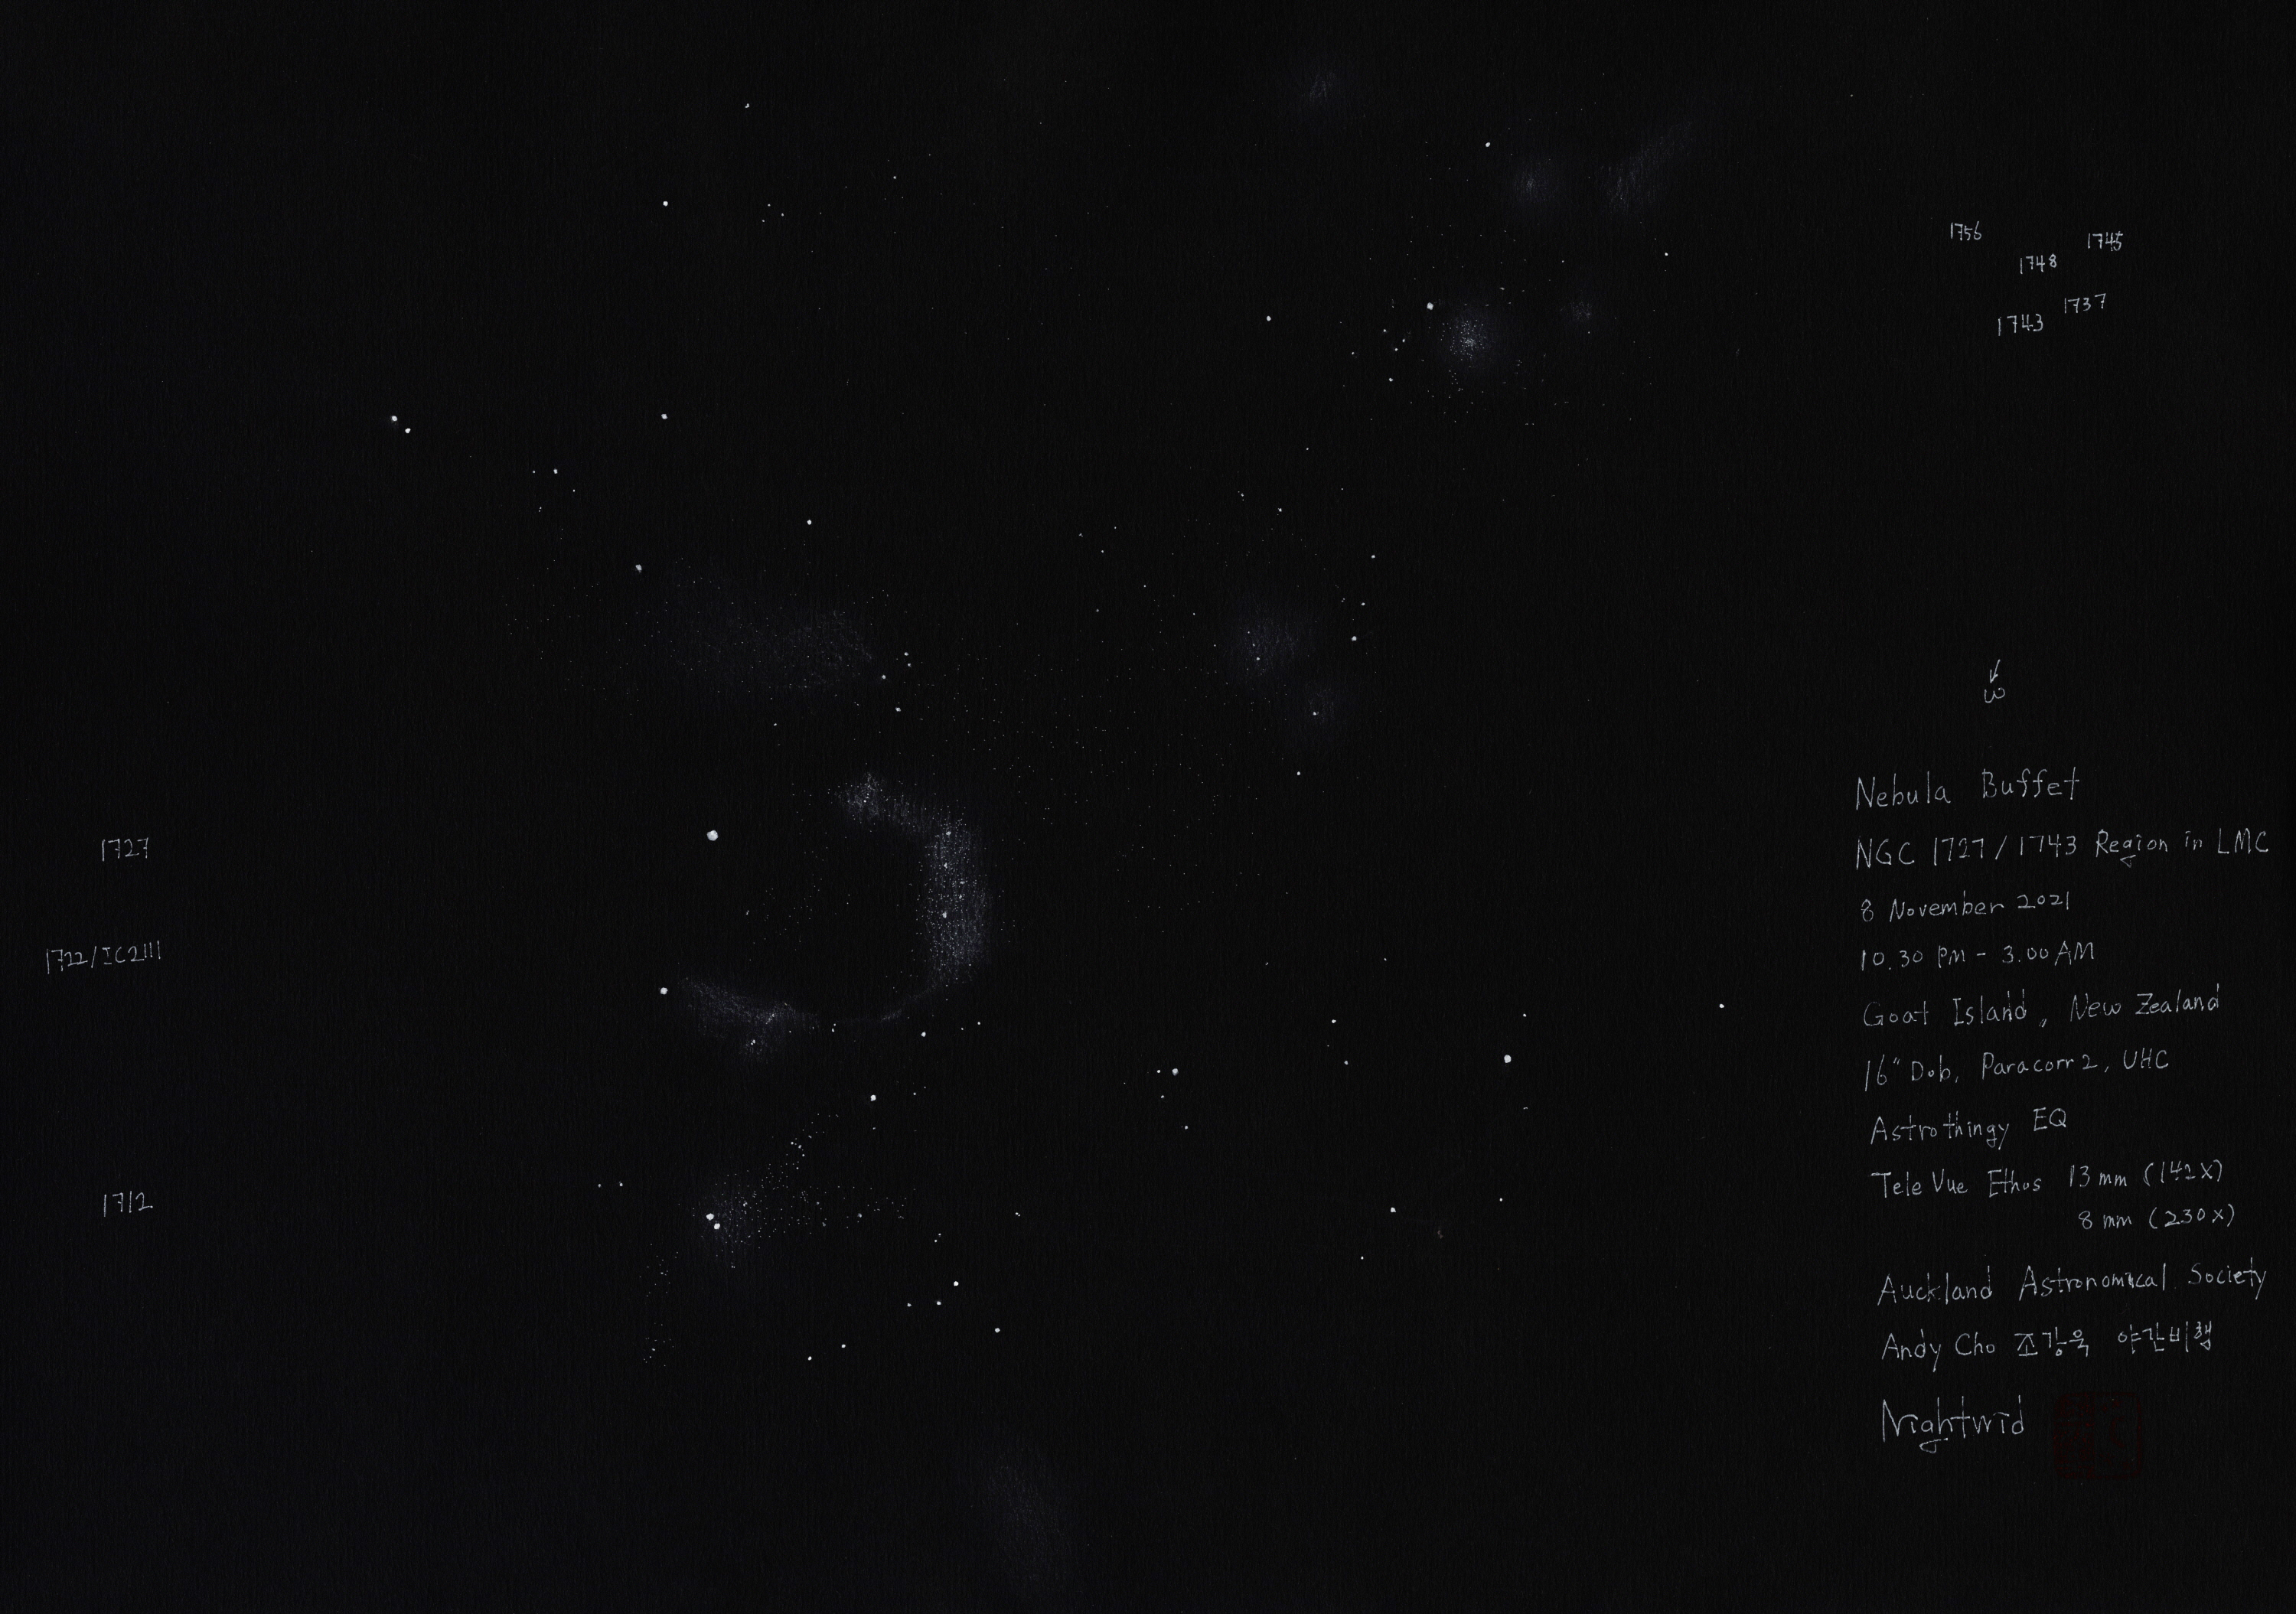 3000_NGC1727 1743_BR_211108.jpg